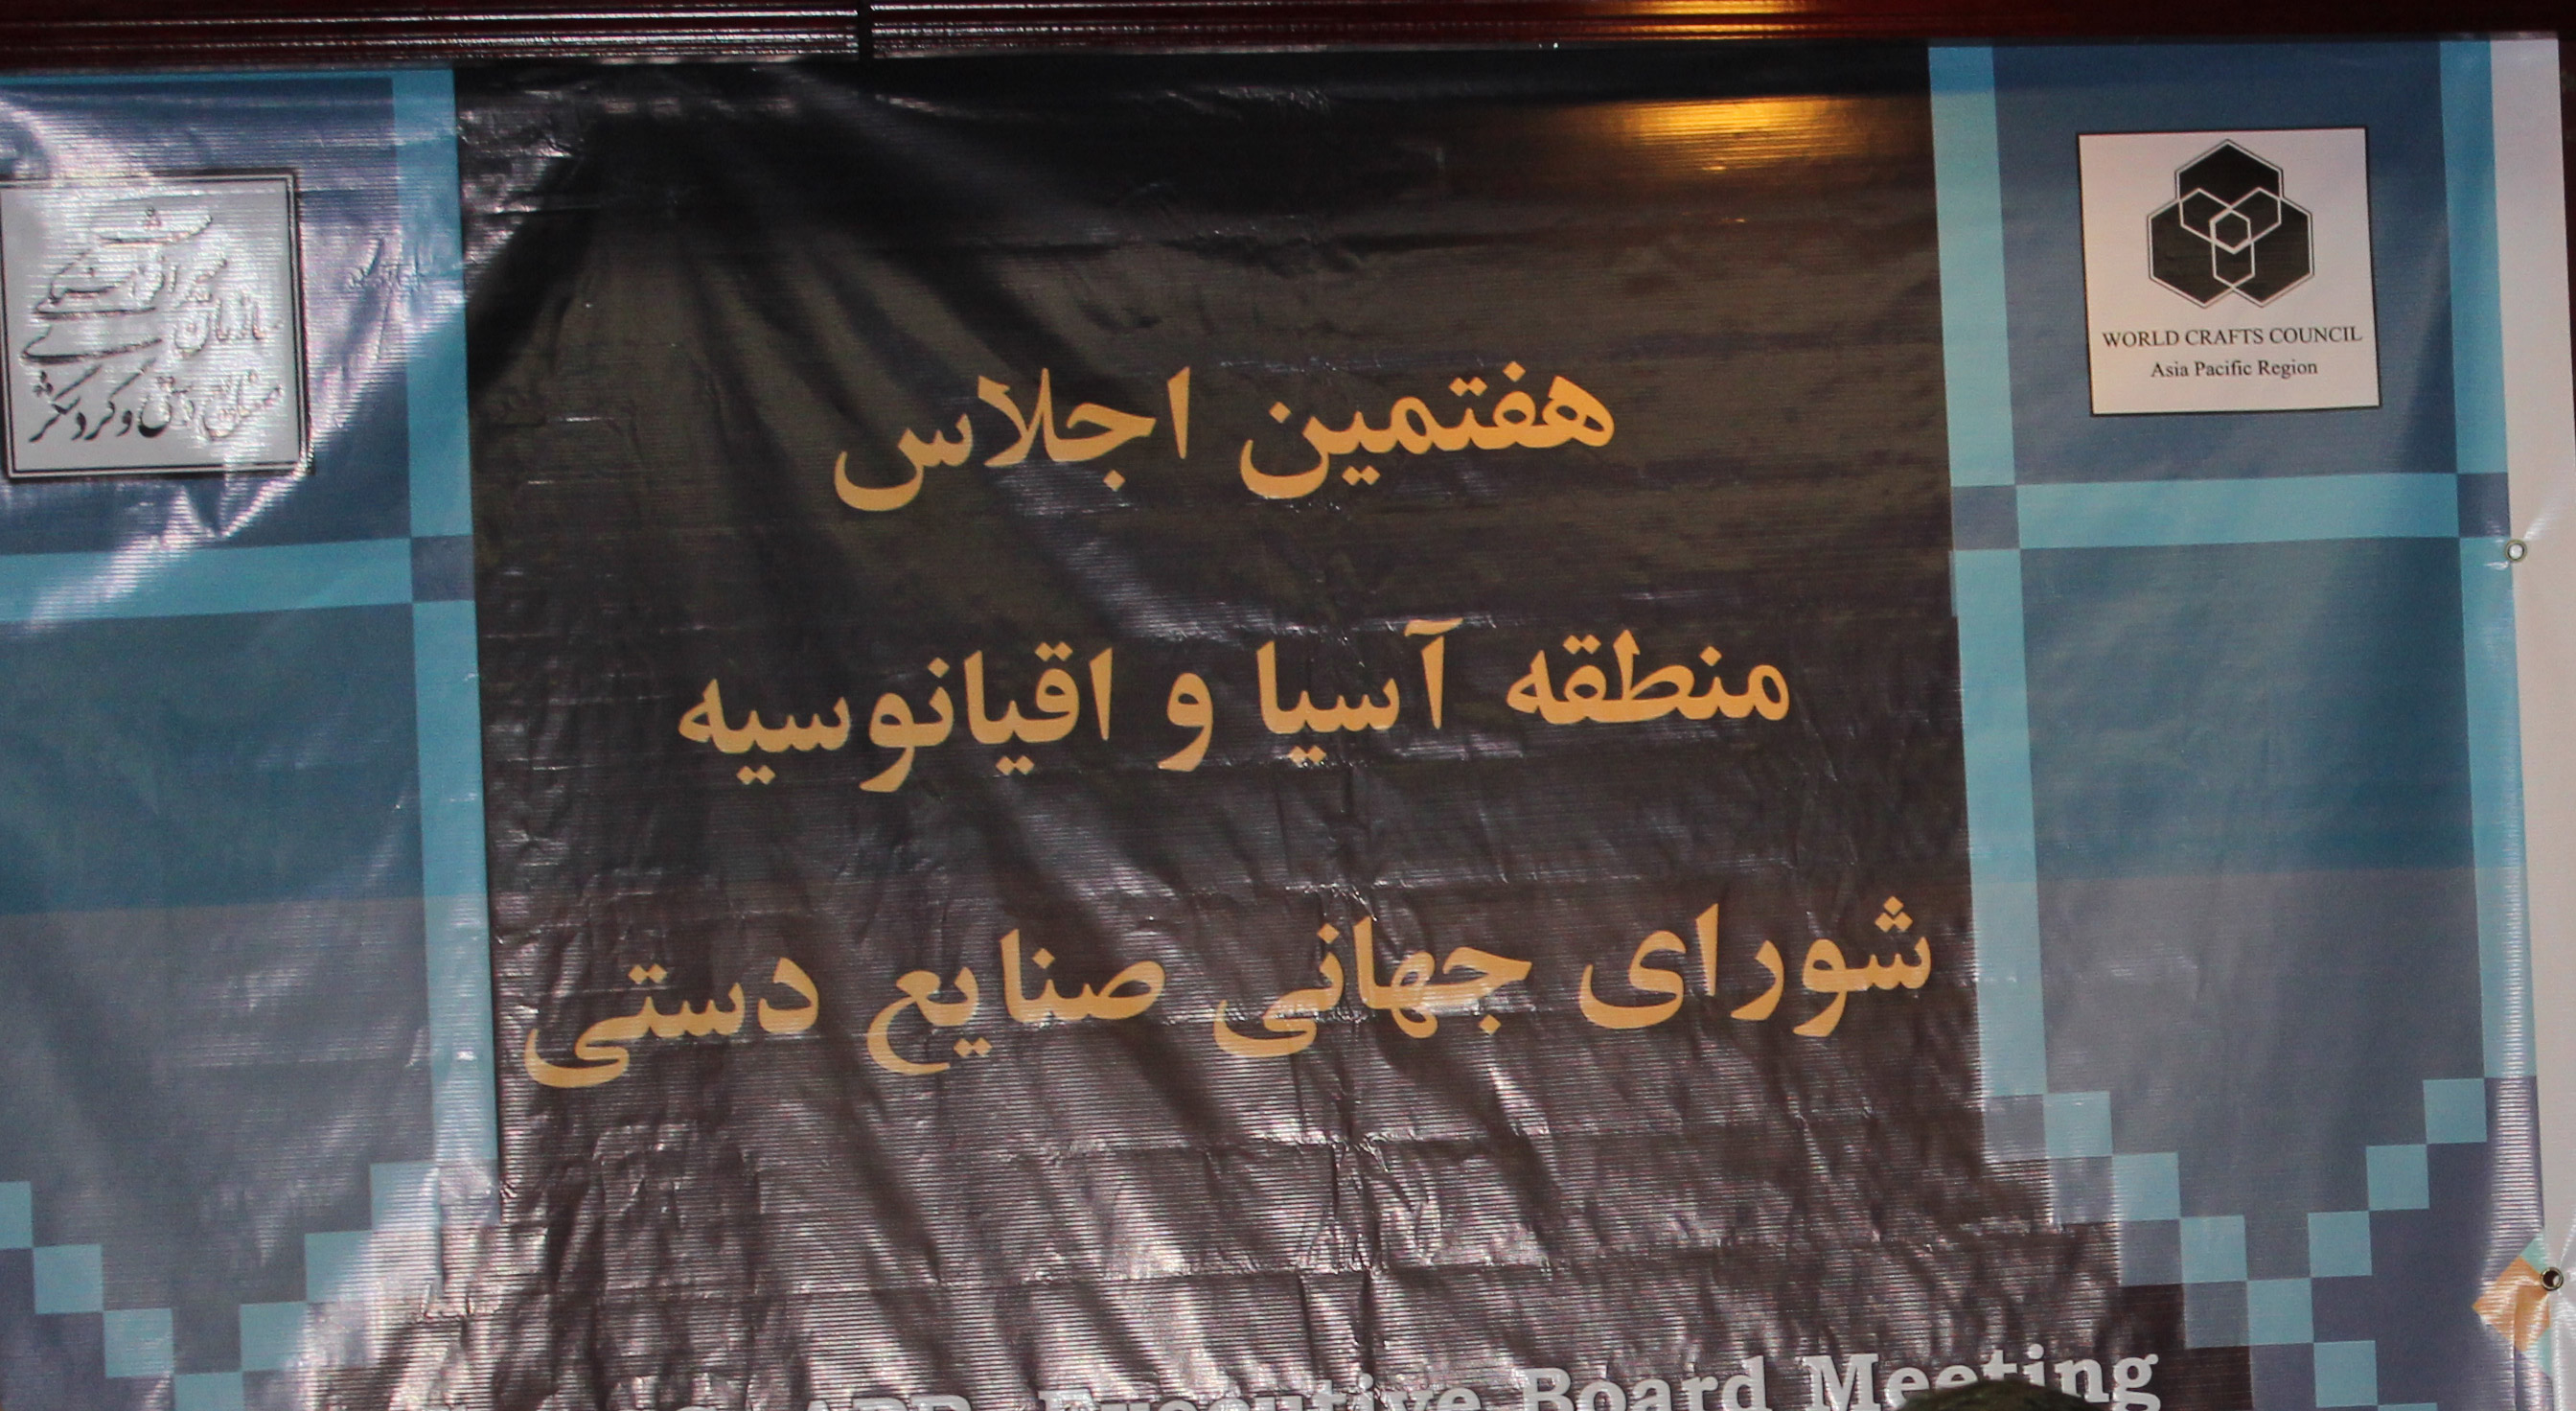 اجلاس آسیا - اقیانوسیه در تبریز  آغاز به کار کرد